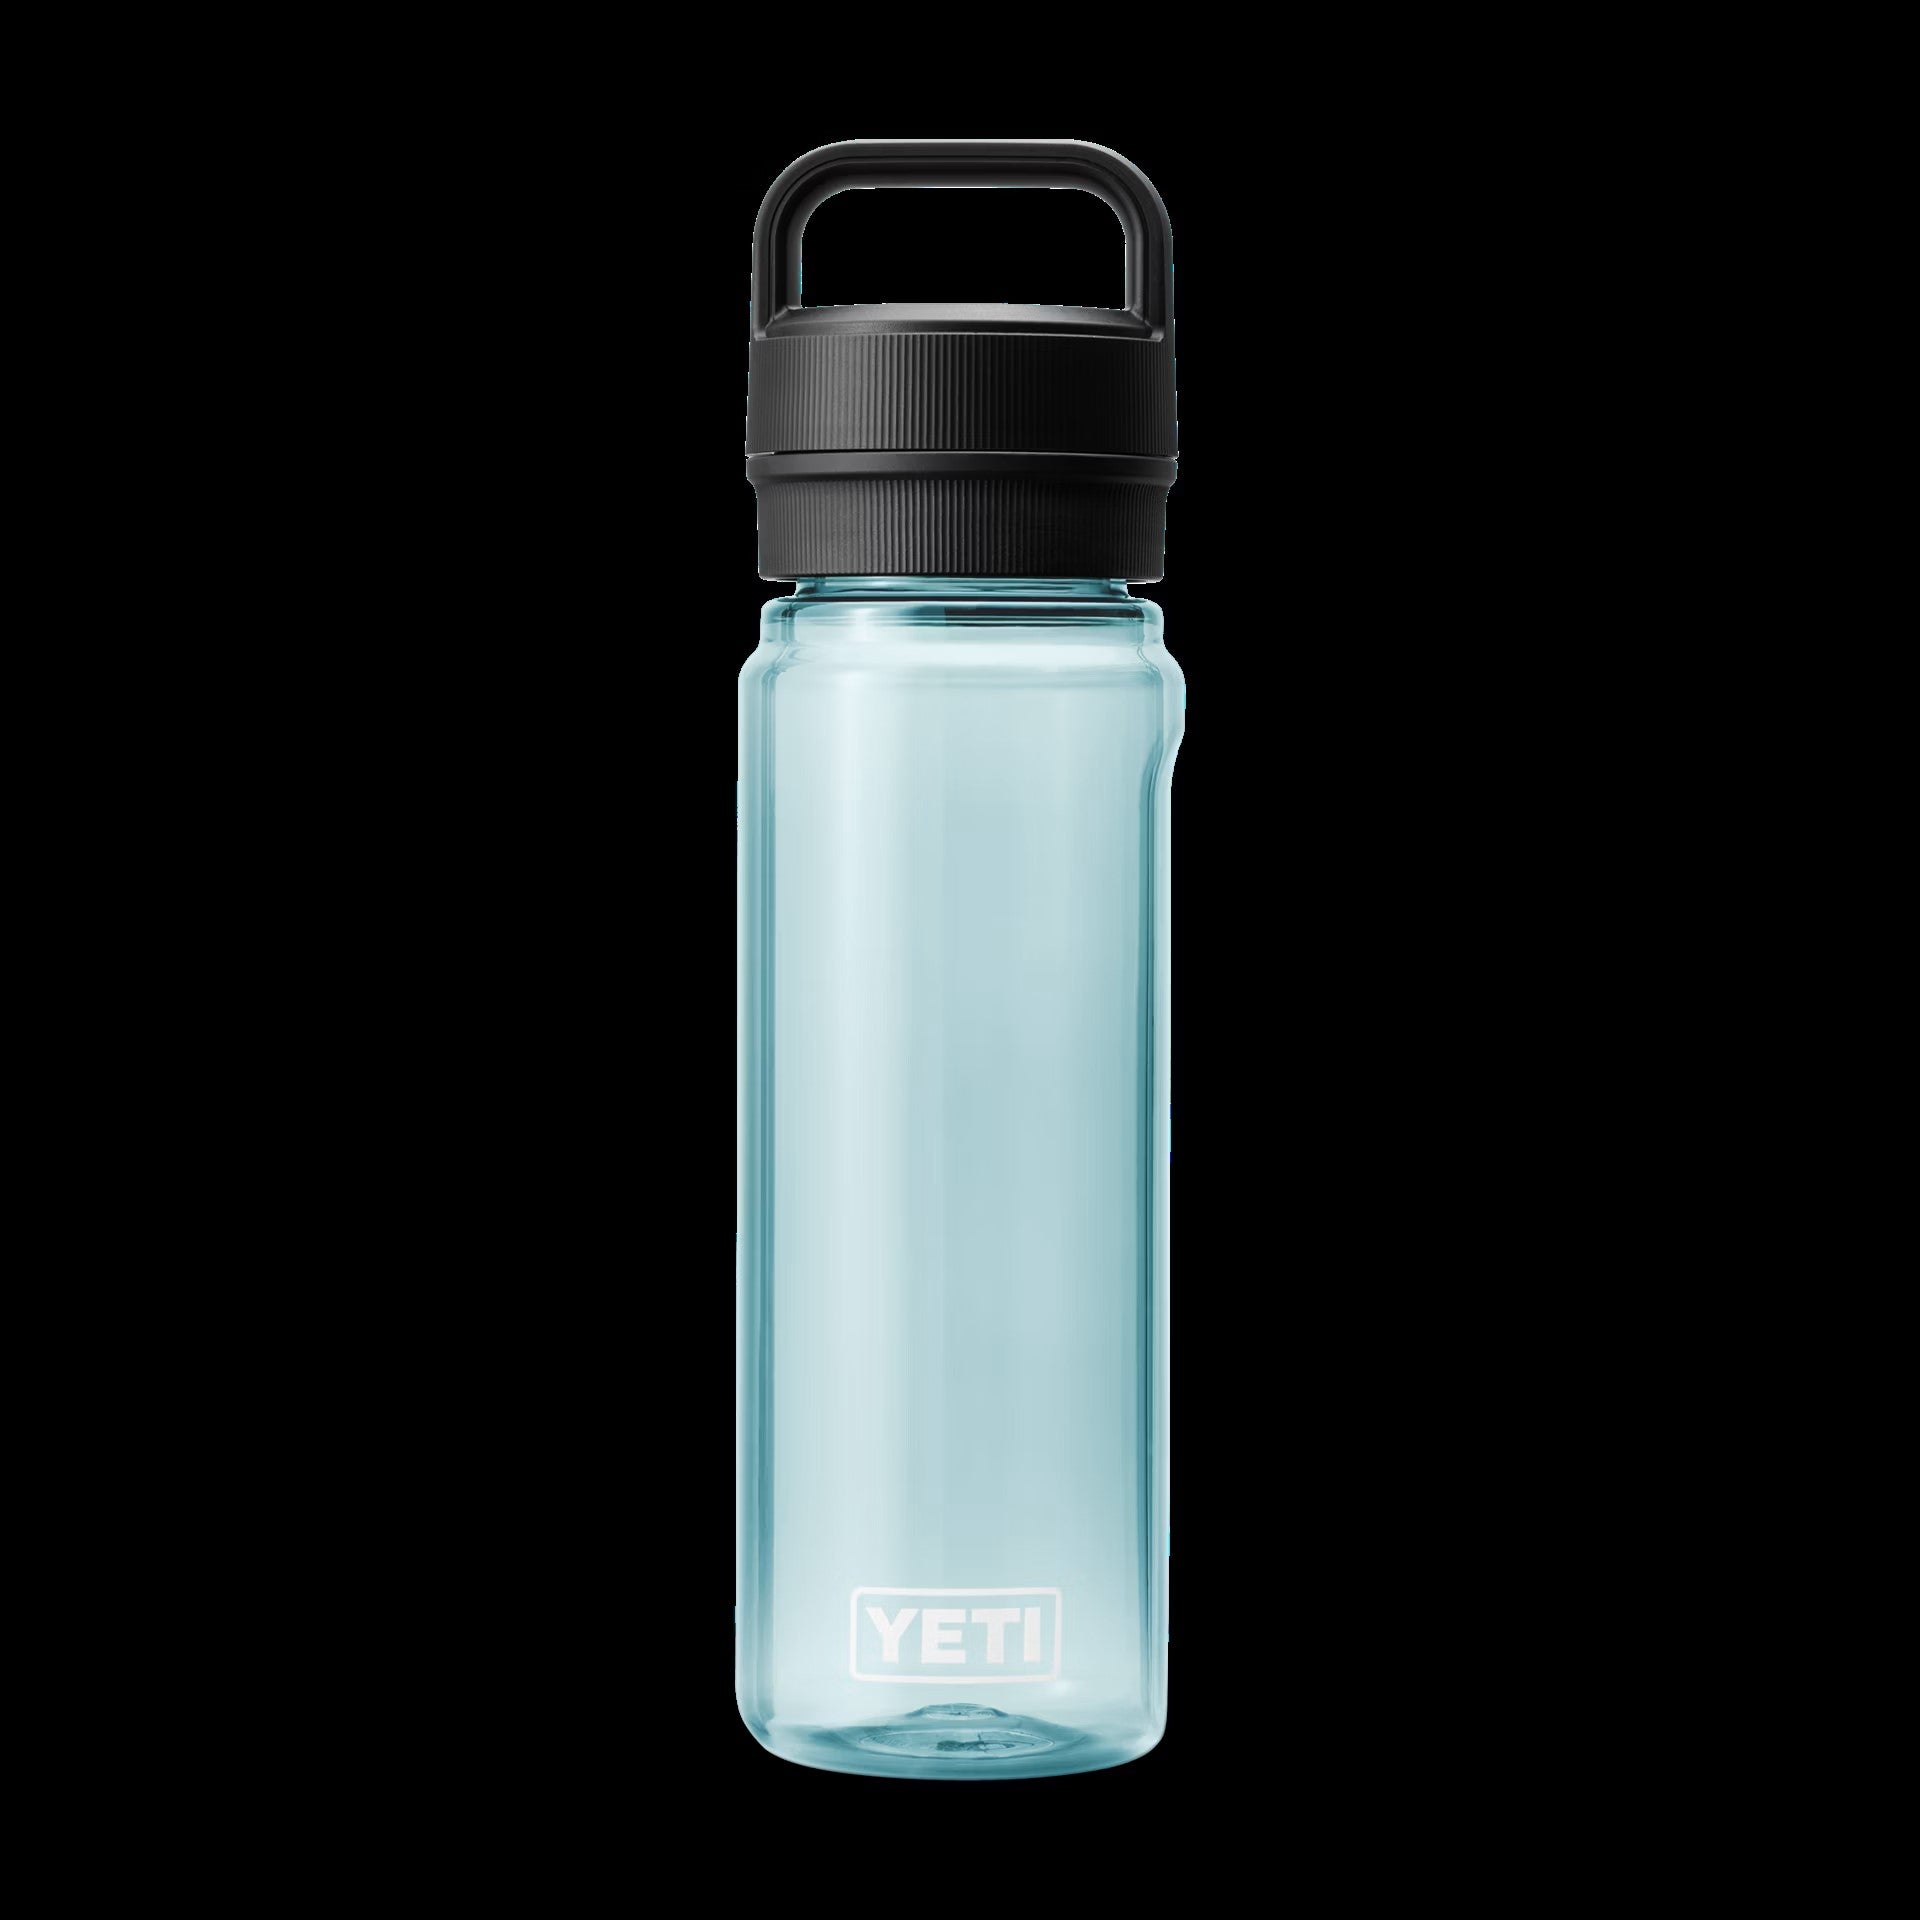 Yeti Yonder 750ML / 25 oz Water Bottle - Water Bottles